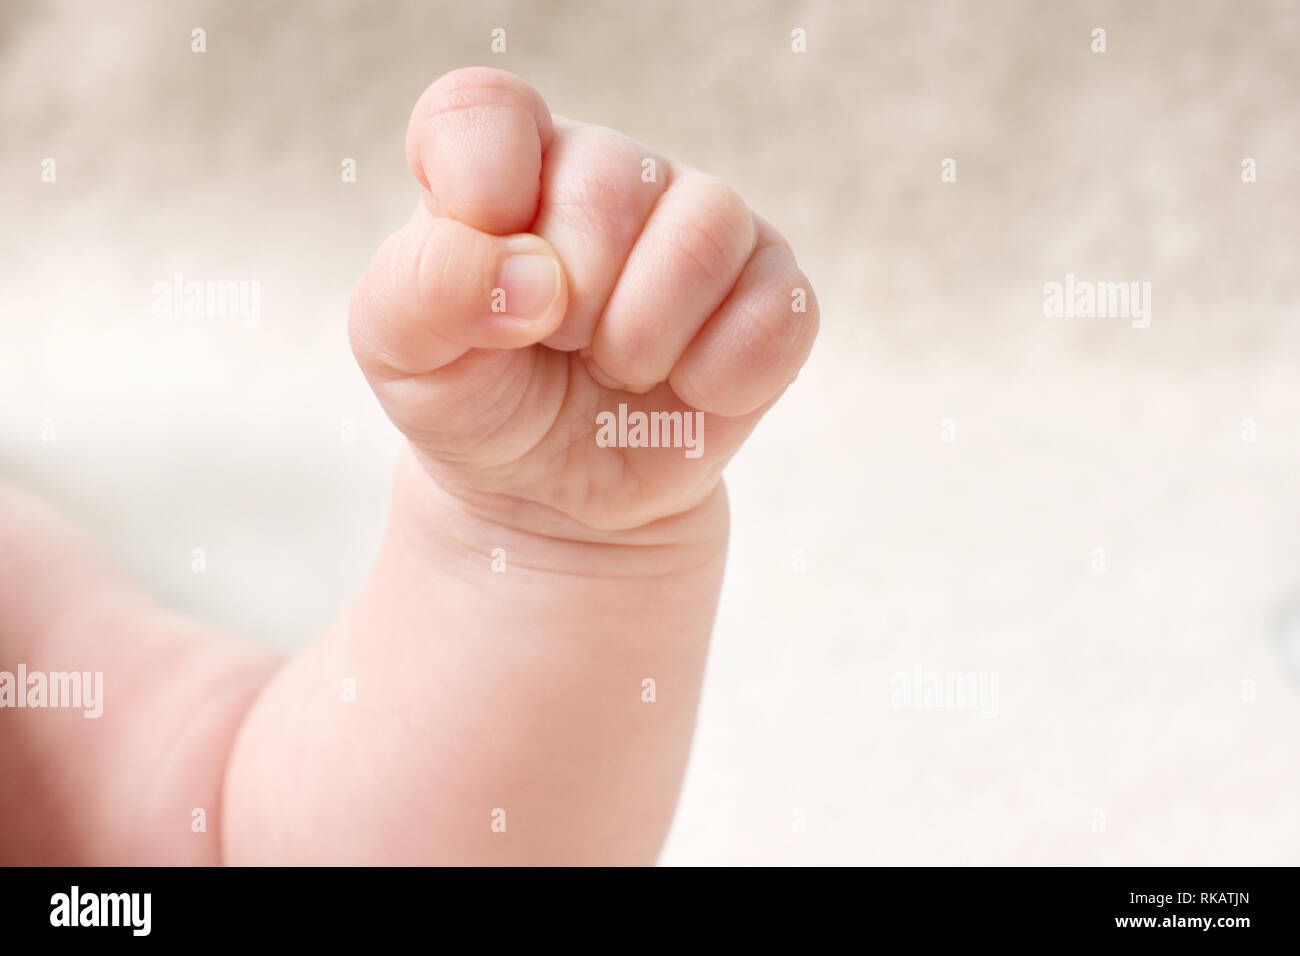 Petit bébé dans la main serra le poing. Petite new born baby's arm gros plan sur fond clair Banque D'Images